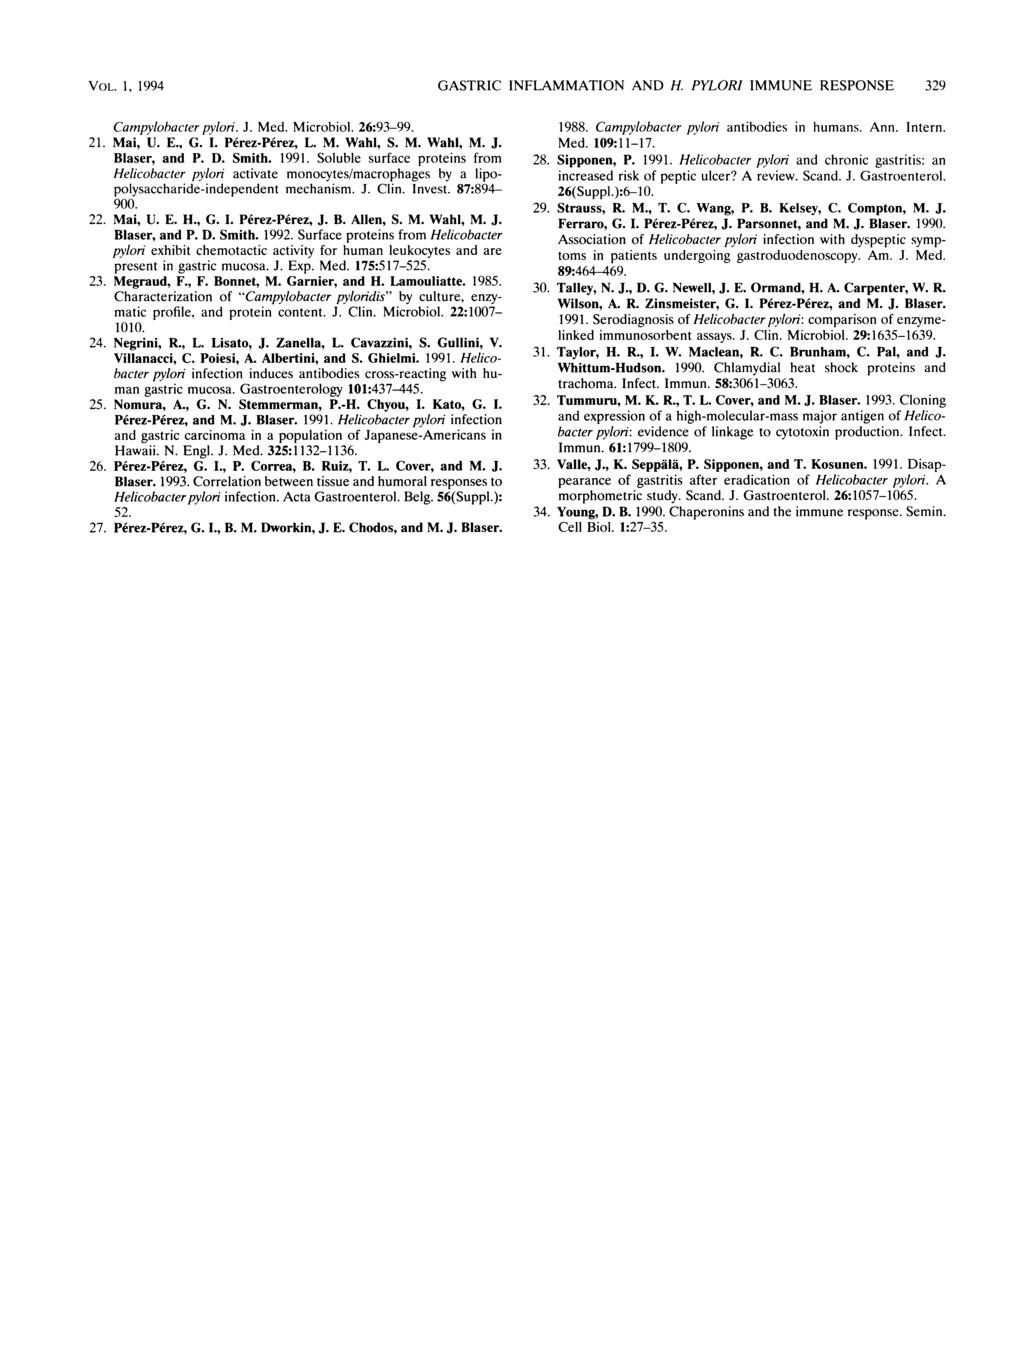 VOL. 1, 1994 GASTRIC INFLAMMATION AND H. PYLORI IMMUNE RESPONSE 329 Campylobacter pylori. J. Med. Microbiol. 26:93-99. 21. Mai, U. E., G. I. Perez-Perez, L. M. Wahl, S. M. Wahl, M. J. Blaser, and P.